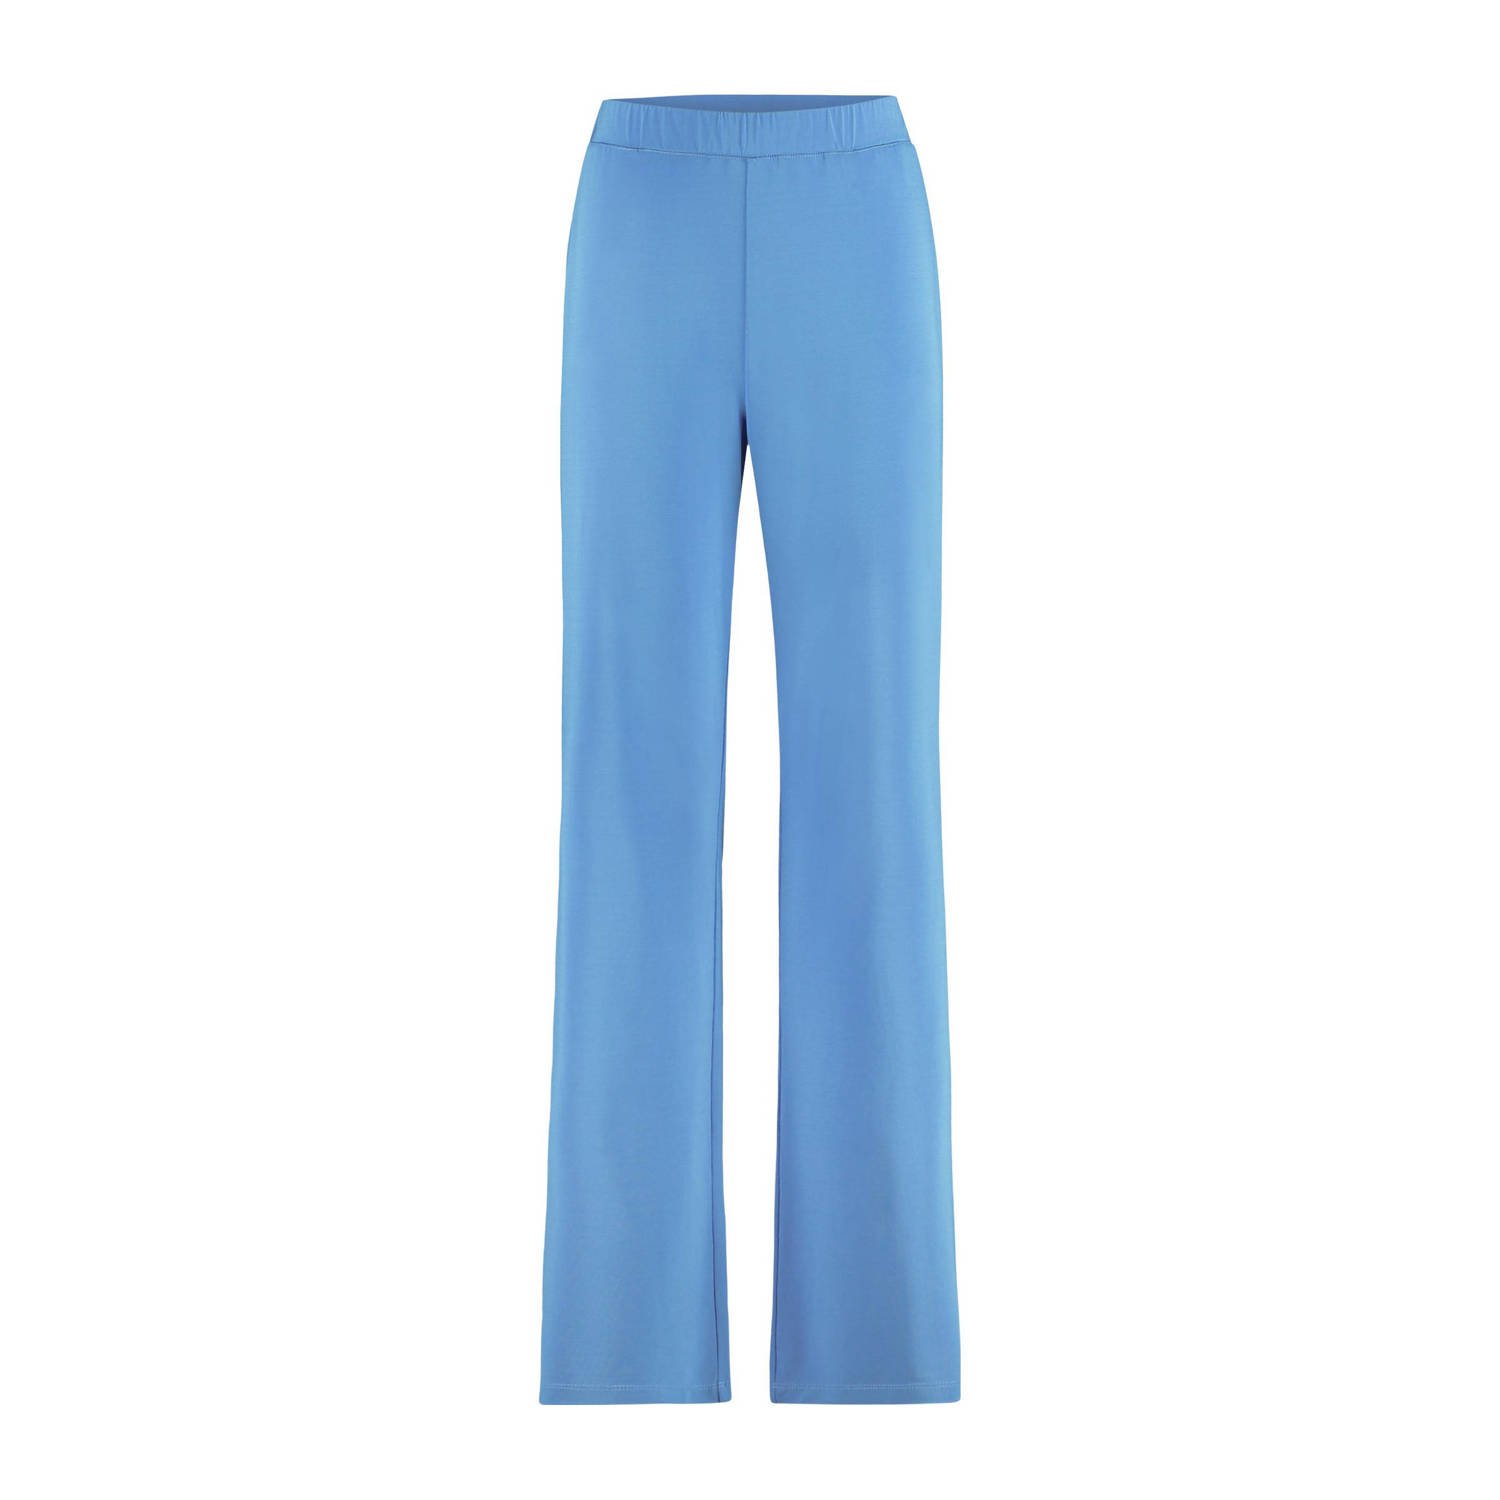 Expresso high waist relaxed broek blauw